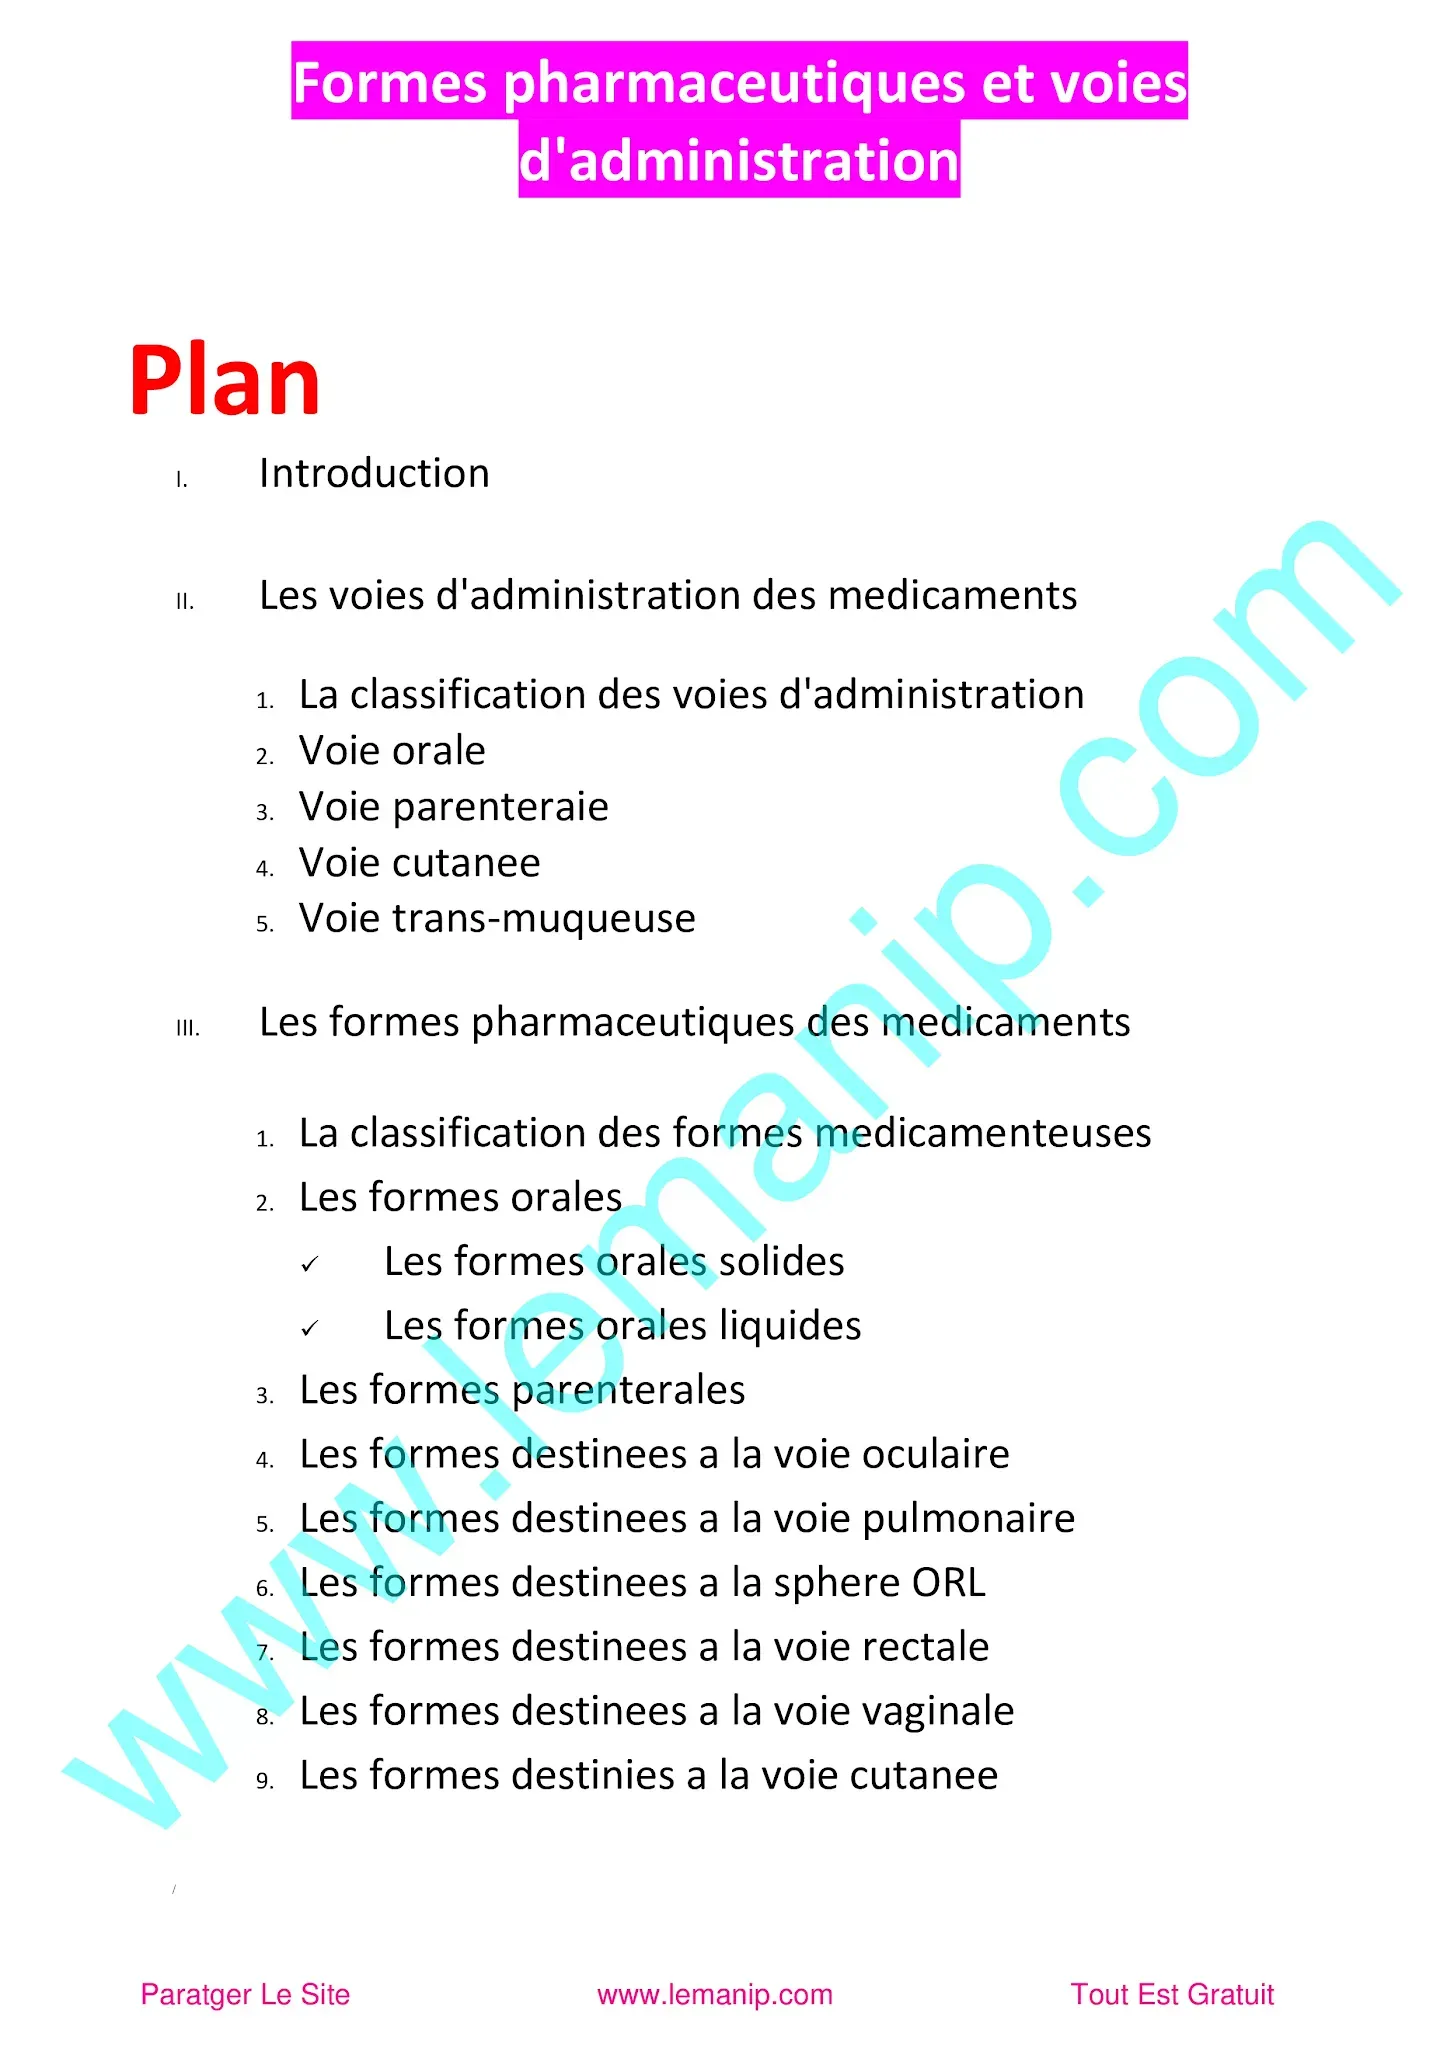 Plan du Cour 3 Module Pharmacologie